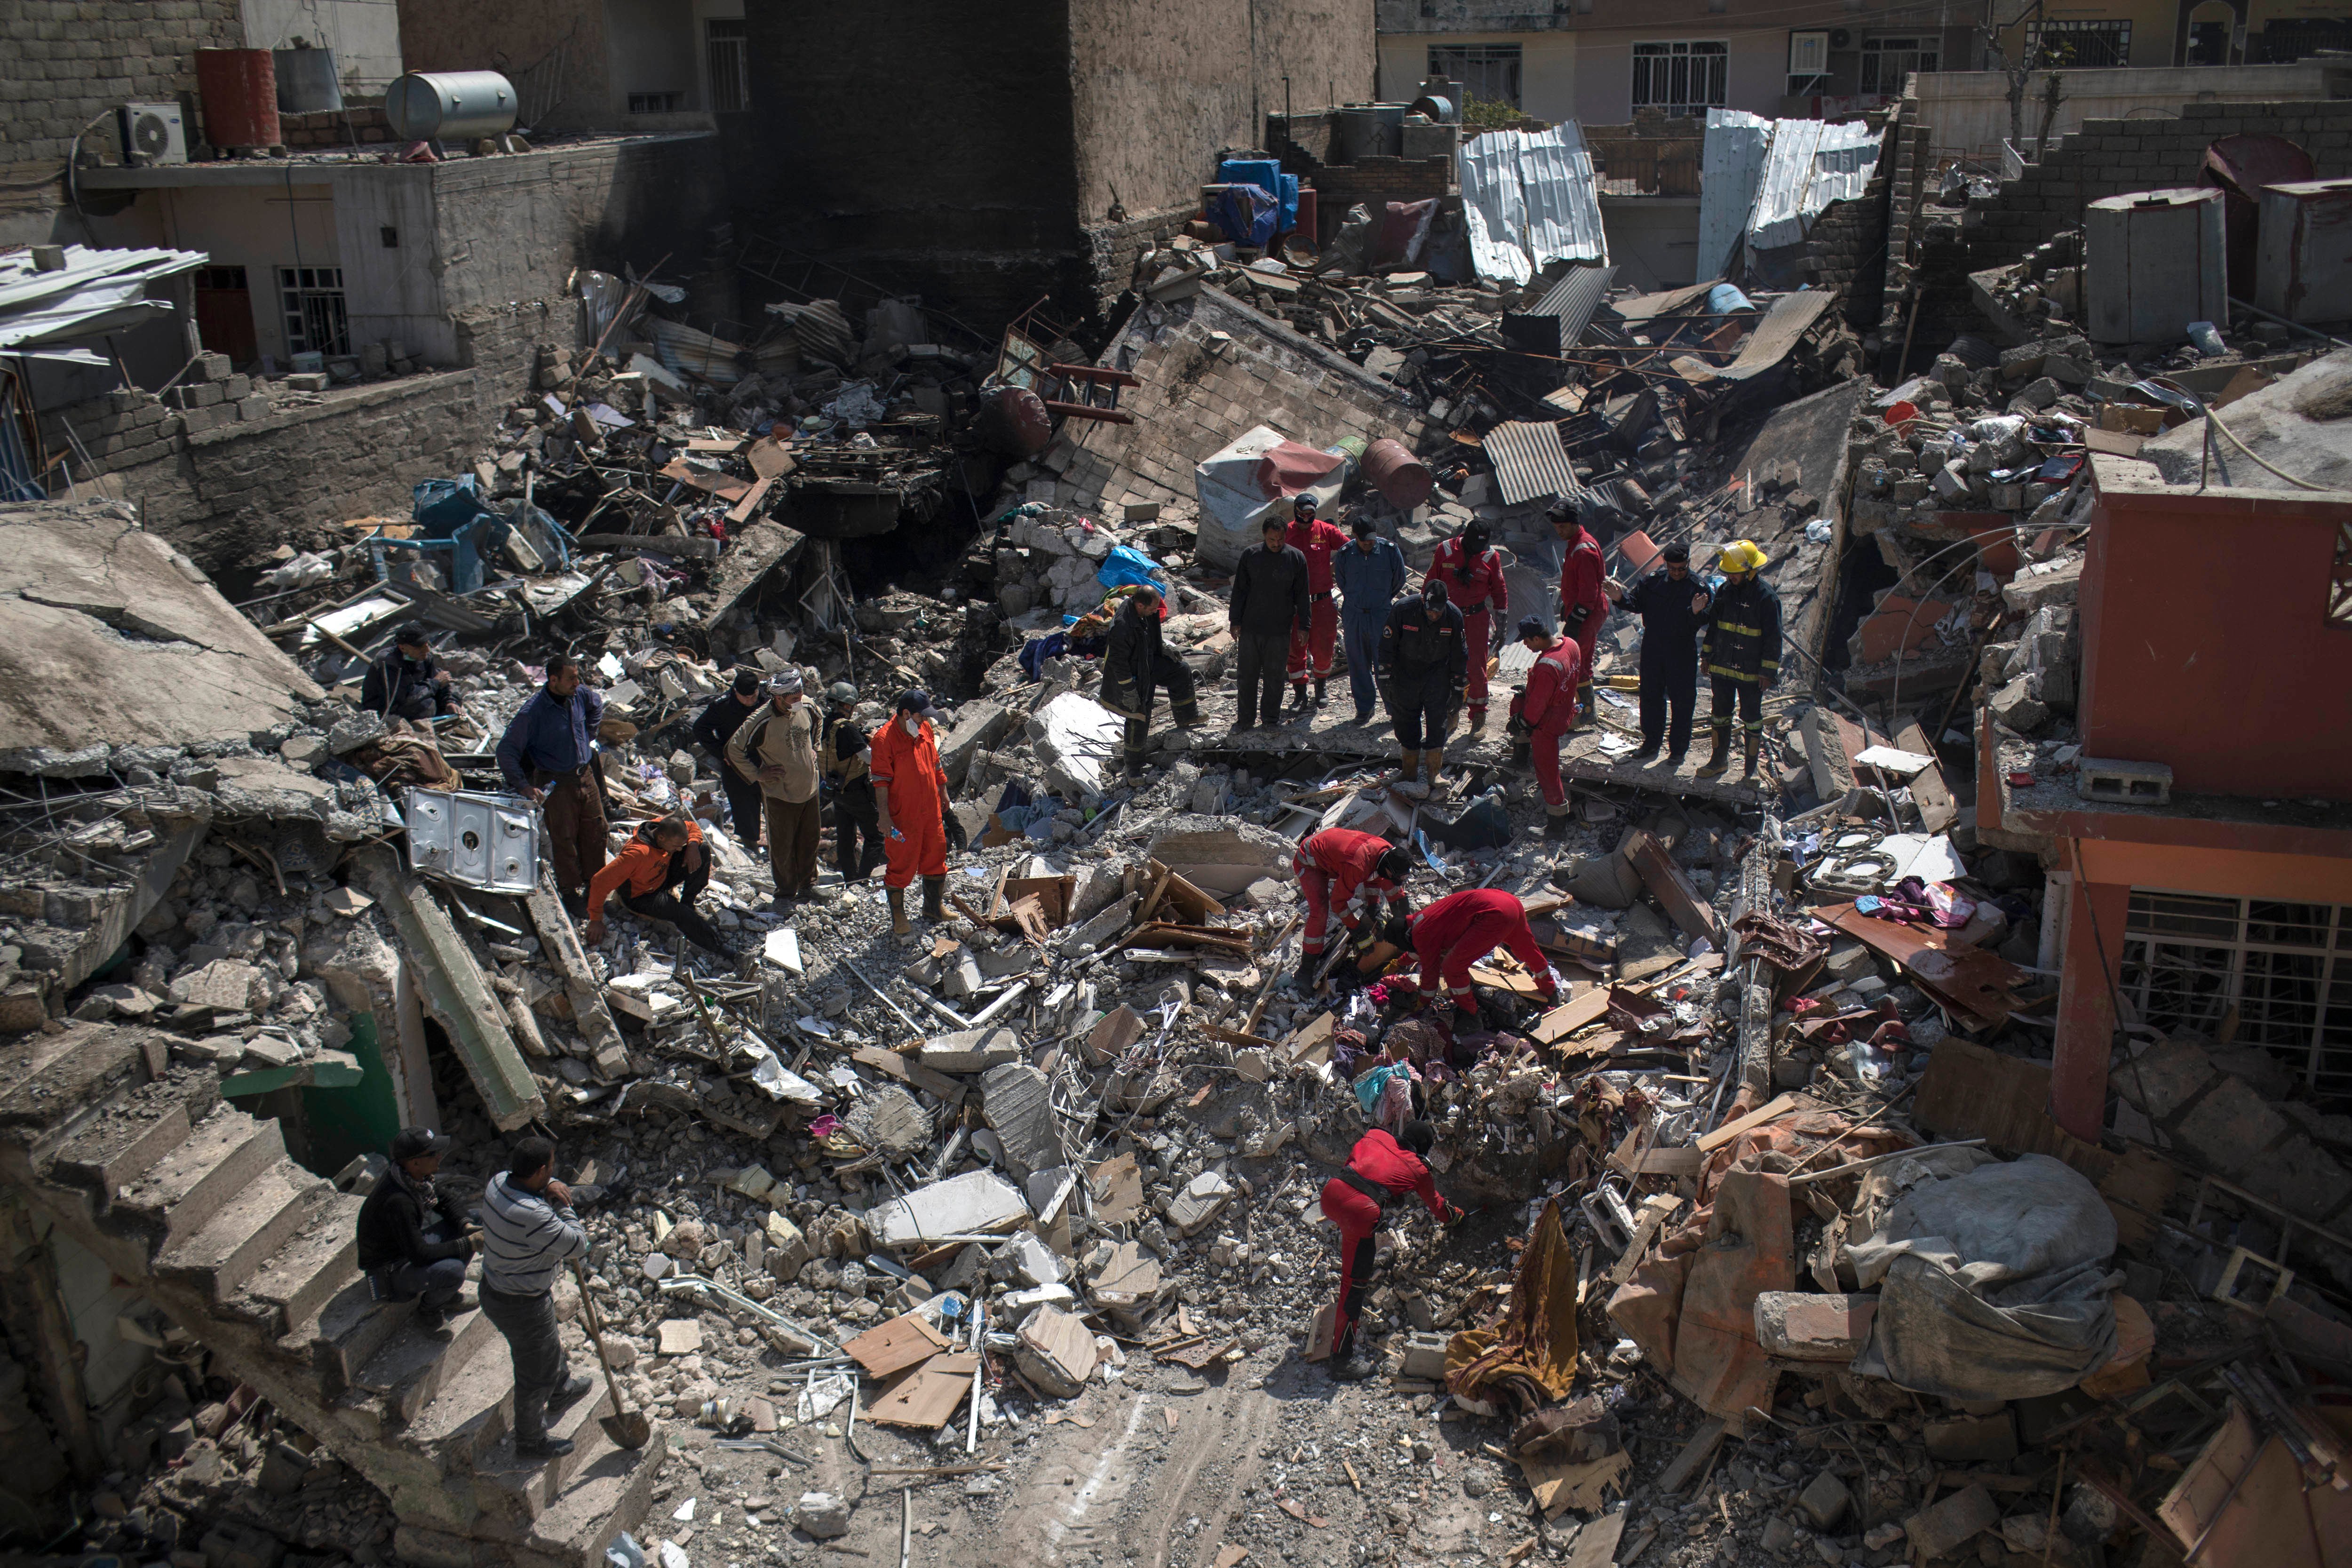 ONU: al menos 307 personas han muerto en Mosul desde febrero